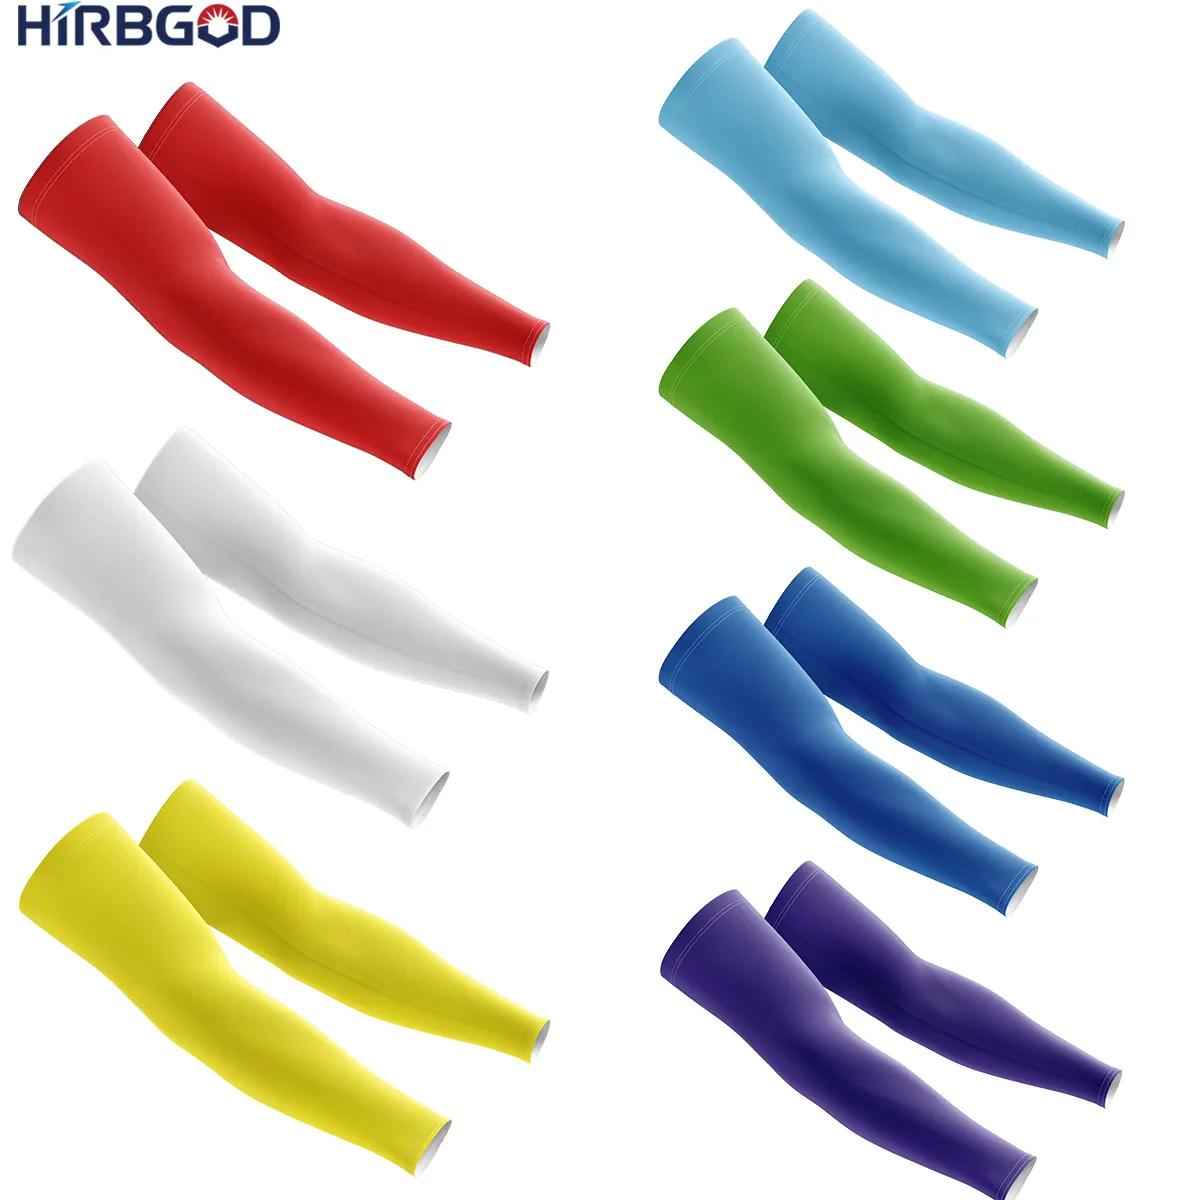 HIRBGOD ปลอกแขนลายสักสำหรับเล่นกอล์ฟเบสบอล,ปลอกแขนป้องกันสำหรับการวิ่งกลางแจ้งสีพื้น